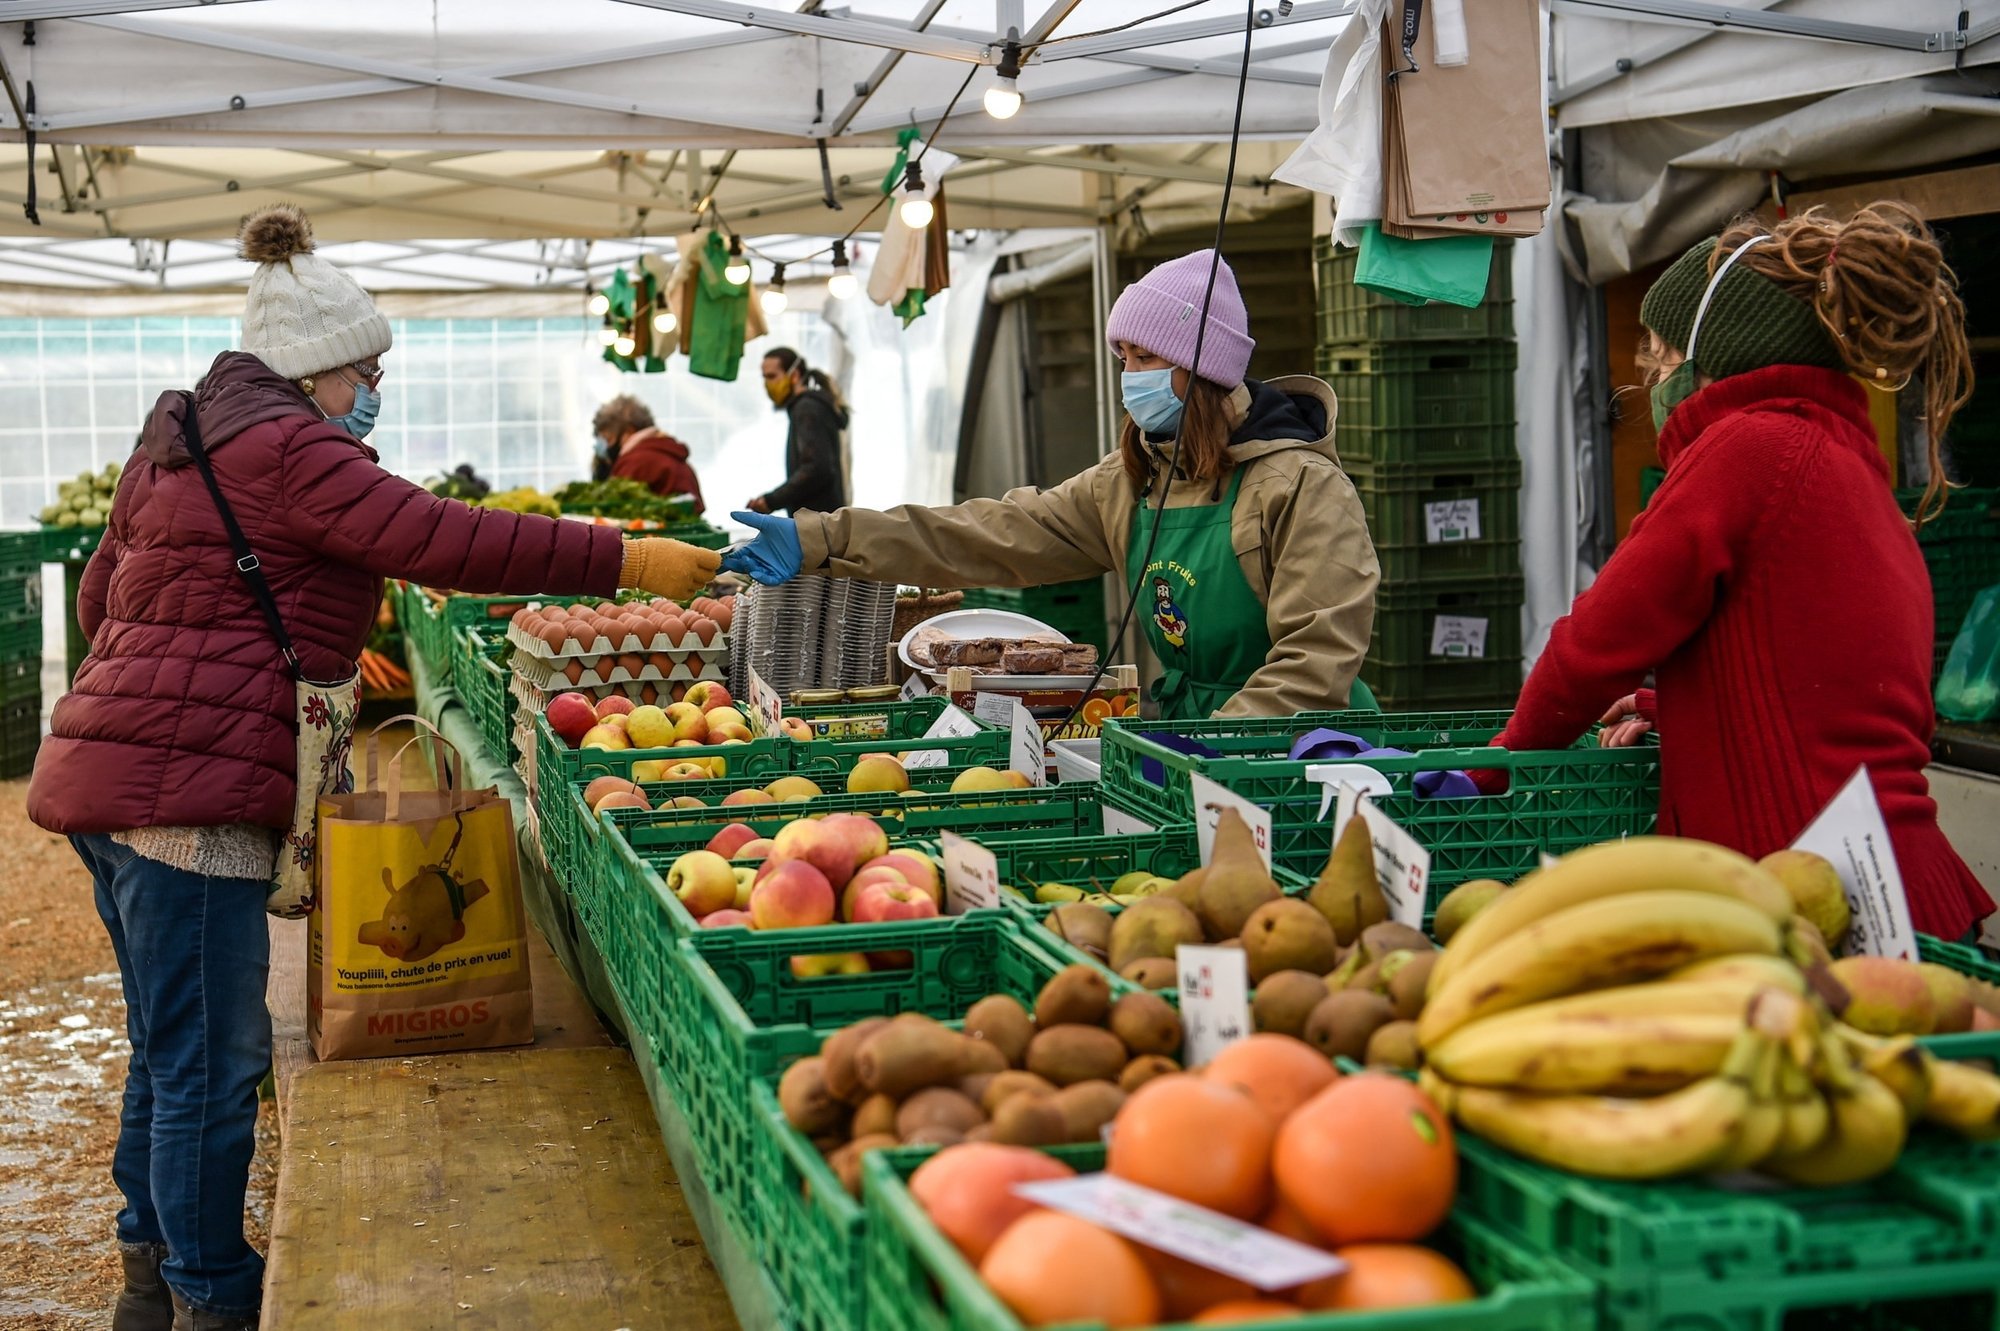 L'action Février sans supermarché "permet directement de réinjecter de l’argent dans le tissu économique local qui en a grandement besoin", écrit Cloé Dutoit.